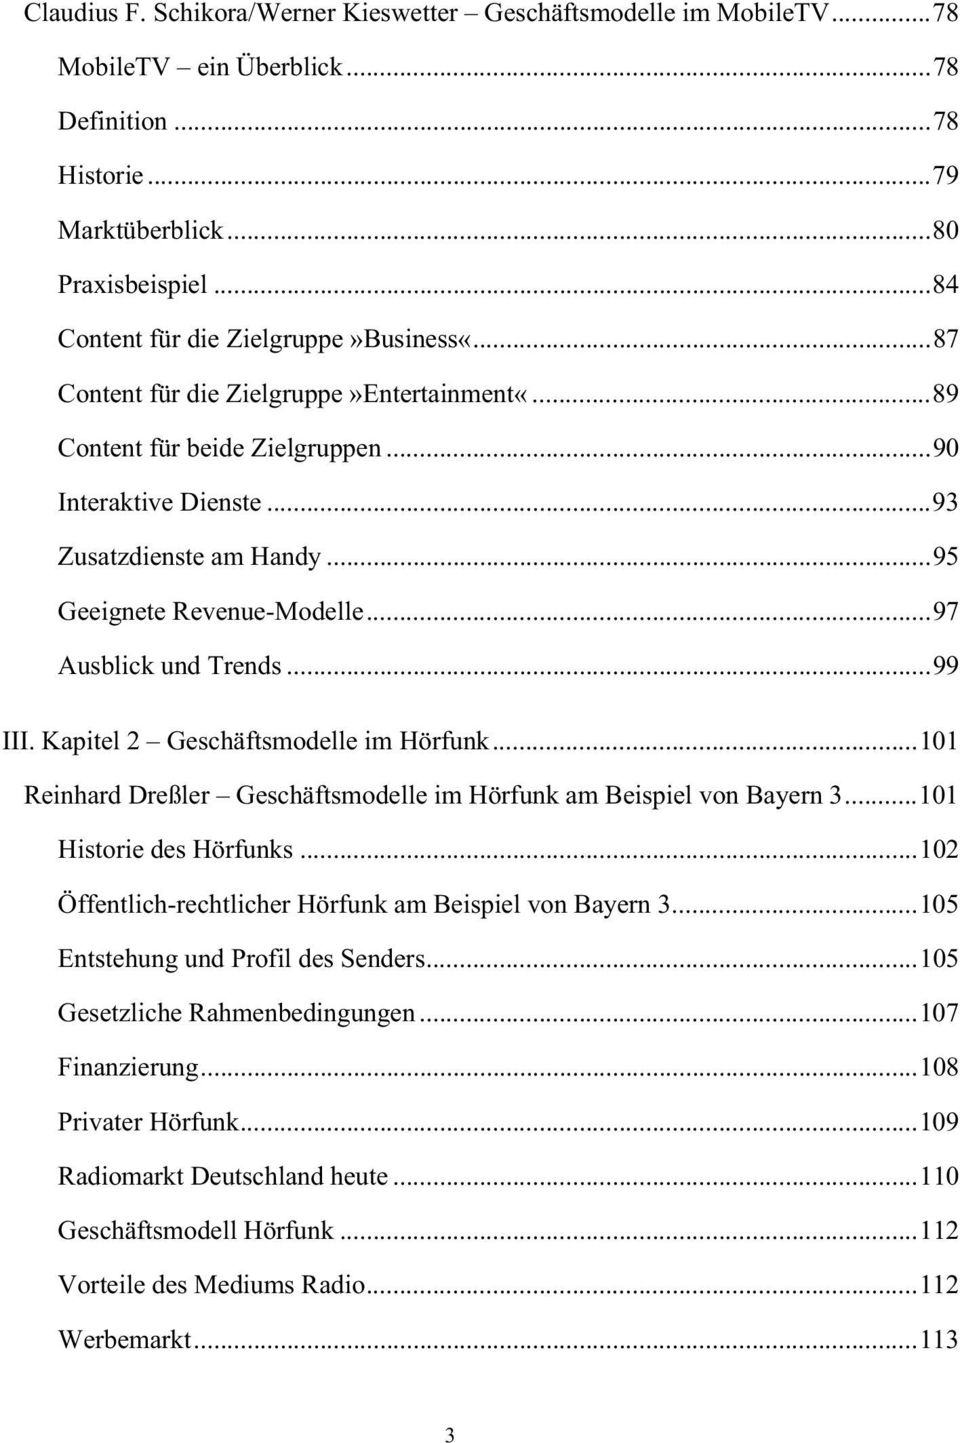 ..95 Geeignete Revenue-Modelle...97 Ausblick und Trends...99 III. Kapitel 2 Geschäftsmodelle im Hörfunk...101 Reinhard Dreßler Geschäftsmodelle im Hörfunk am Beispiel von Bayern 3.